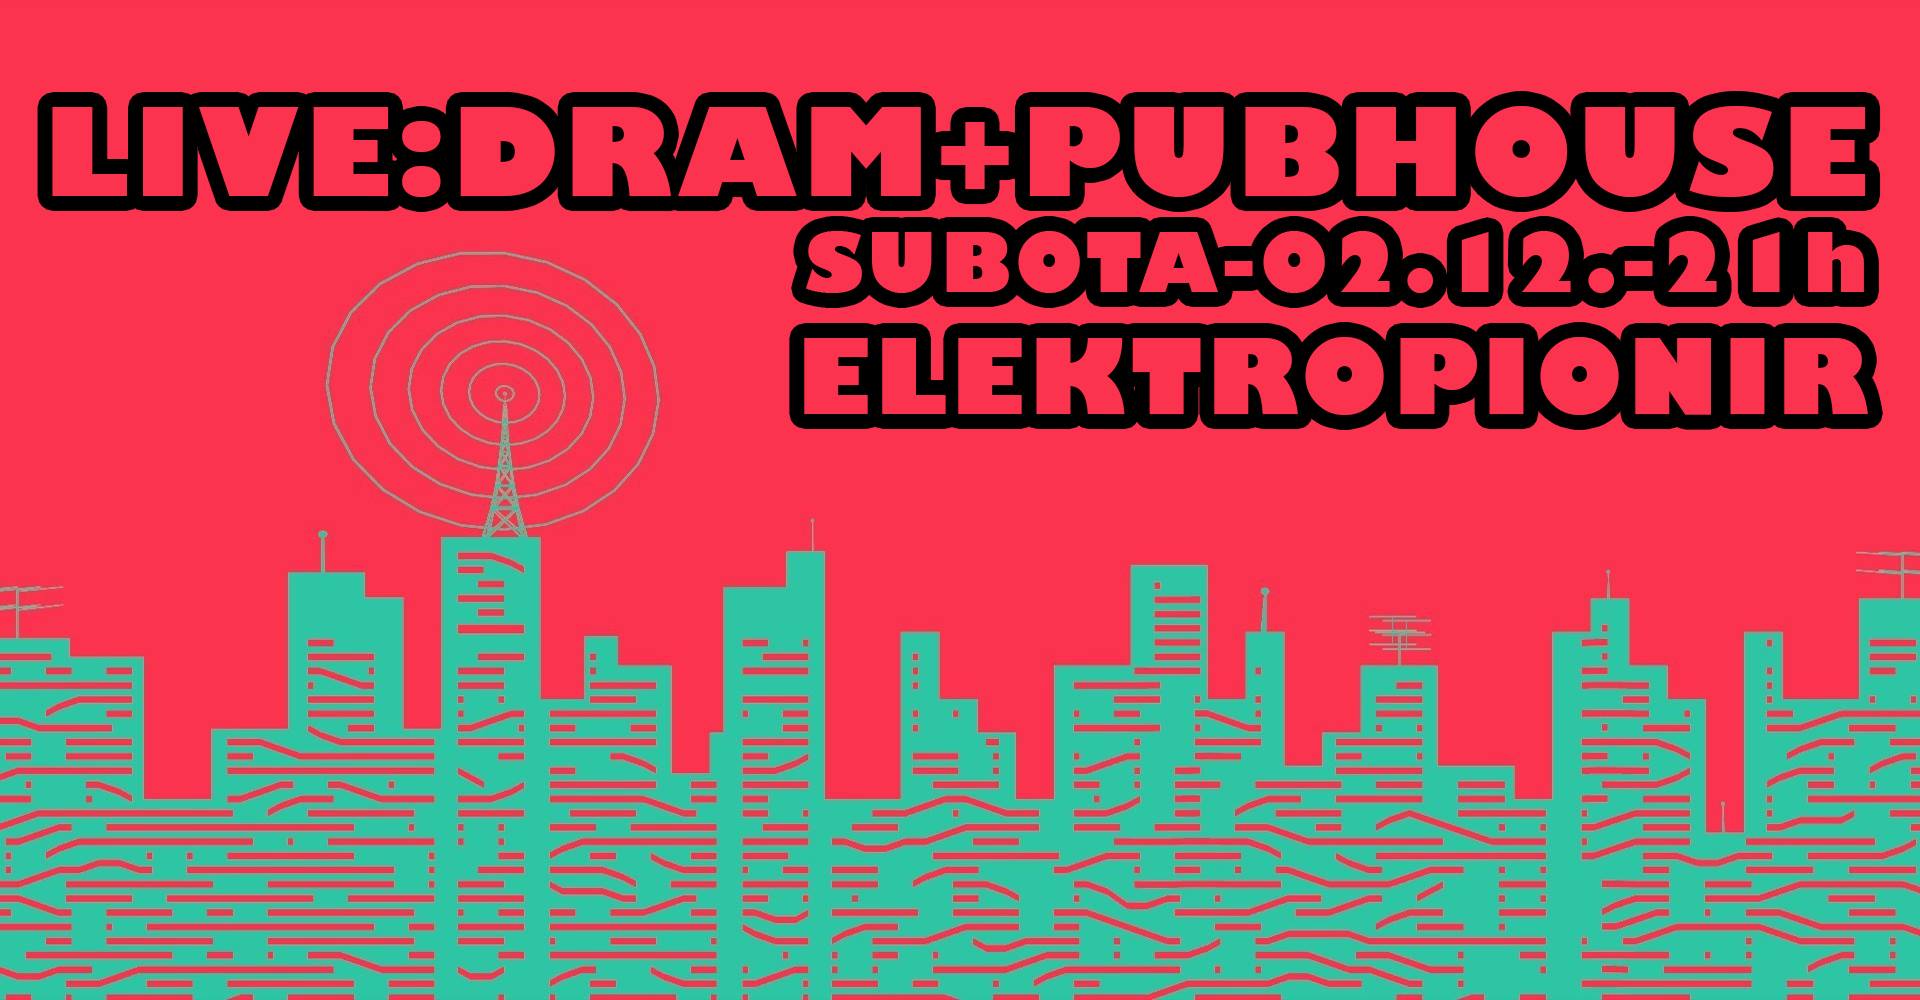 [:en]Dram + Pub House 02.12.2017. Elektropion